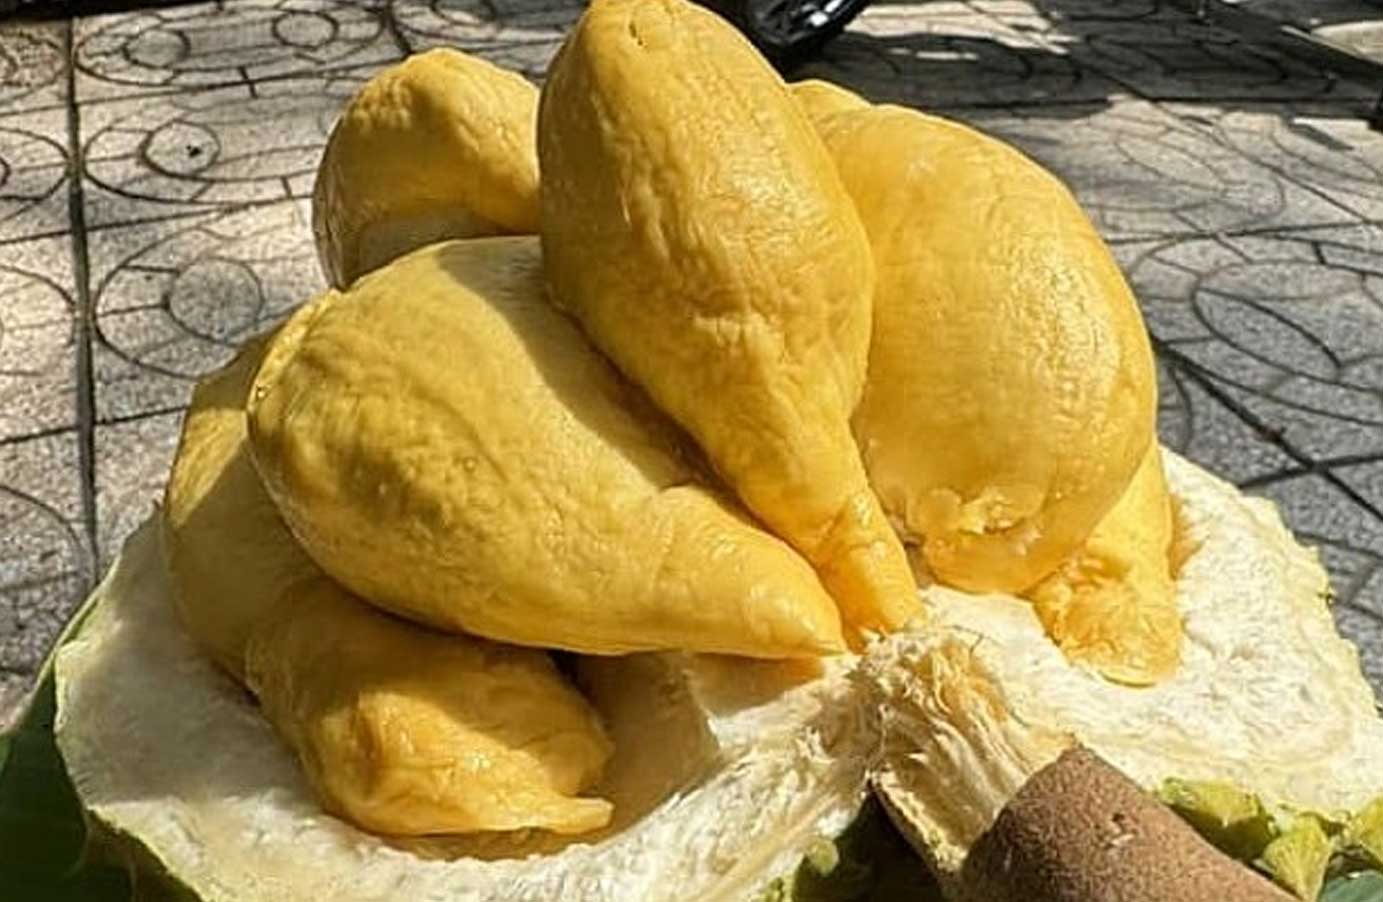 越南金枕榴莲淡季价格飙升50%  中国春节市场榴莲需求旺盛